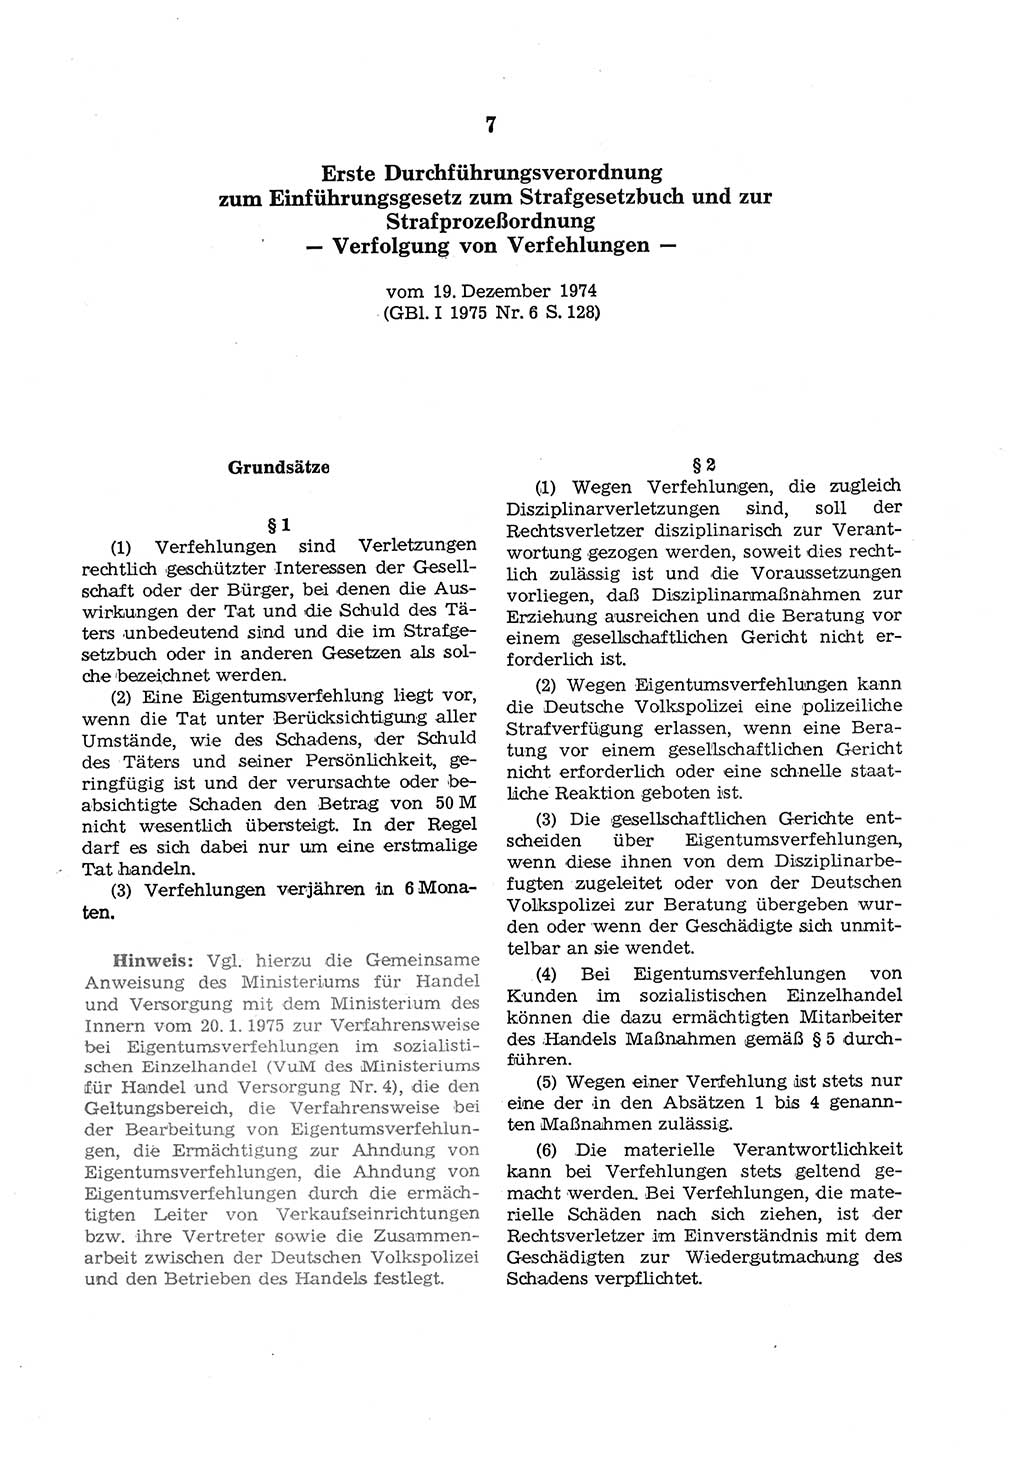 Strafgesetzbuch (StGB) der Deutschen Demokratischen Republik (DDR) und angrenzende Gesetze und Bestimmungen 1975, Seite 113 (StGB DDR Ges. Best. 1975, S. 113)